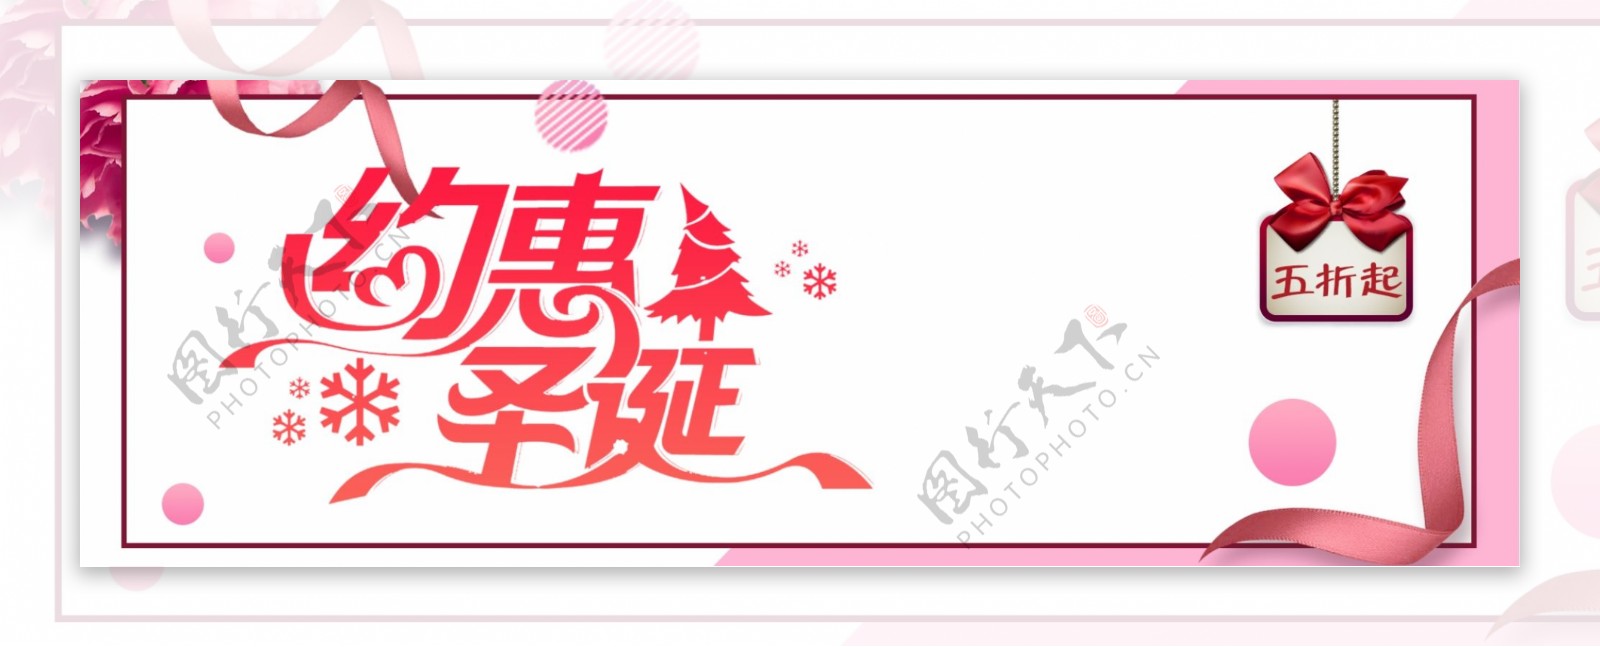 红色可爱冬装圣诞节促销电商banner